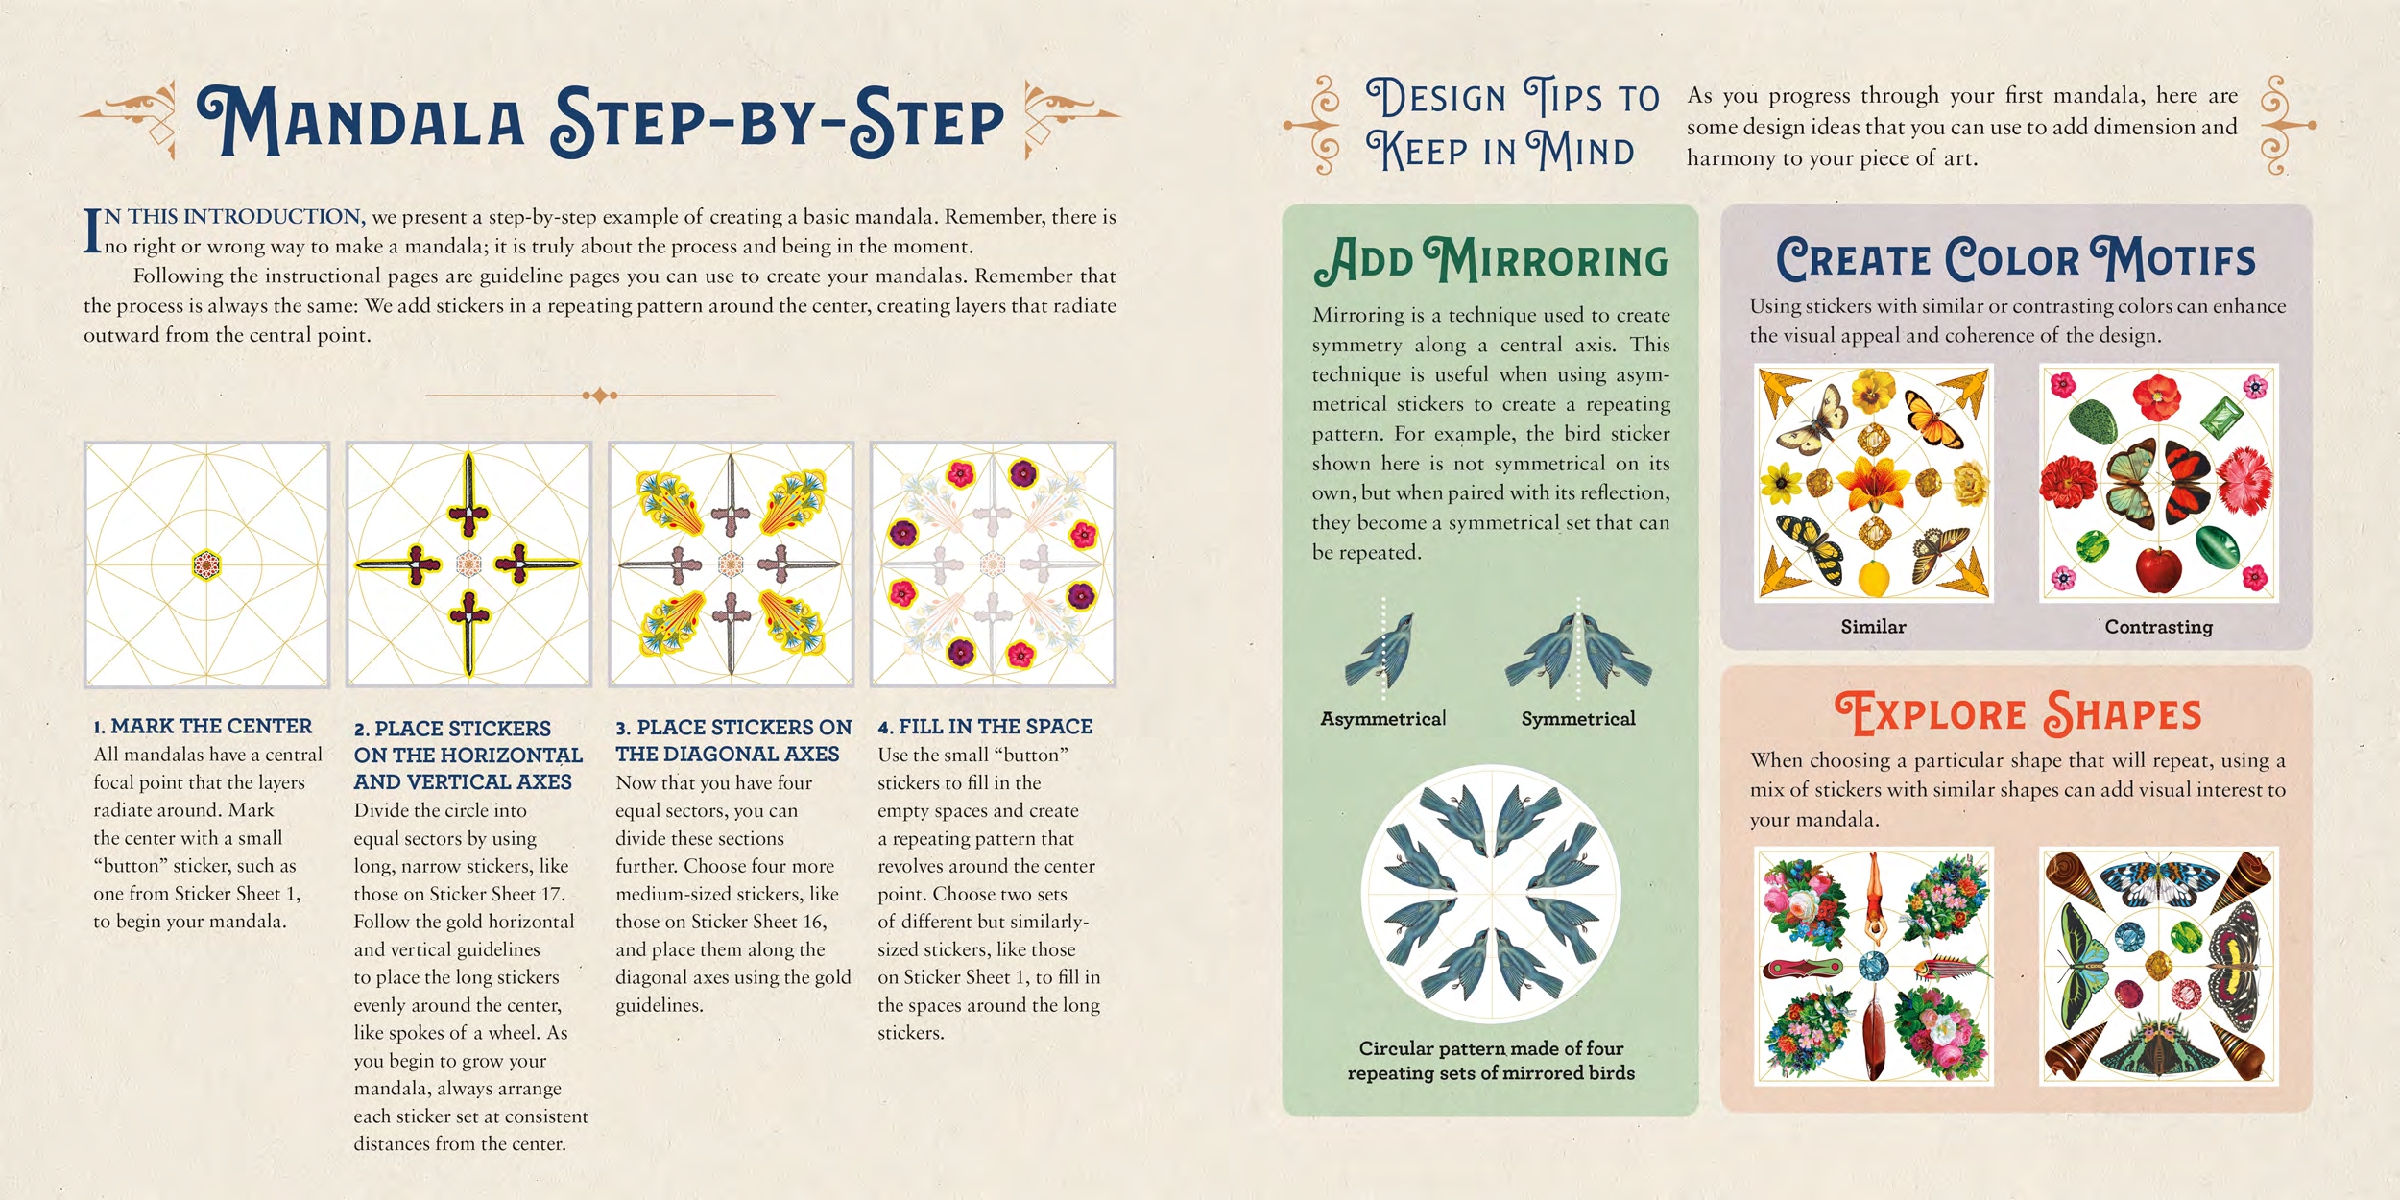 The Antiquarian Sticker Book: Mandala